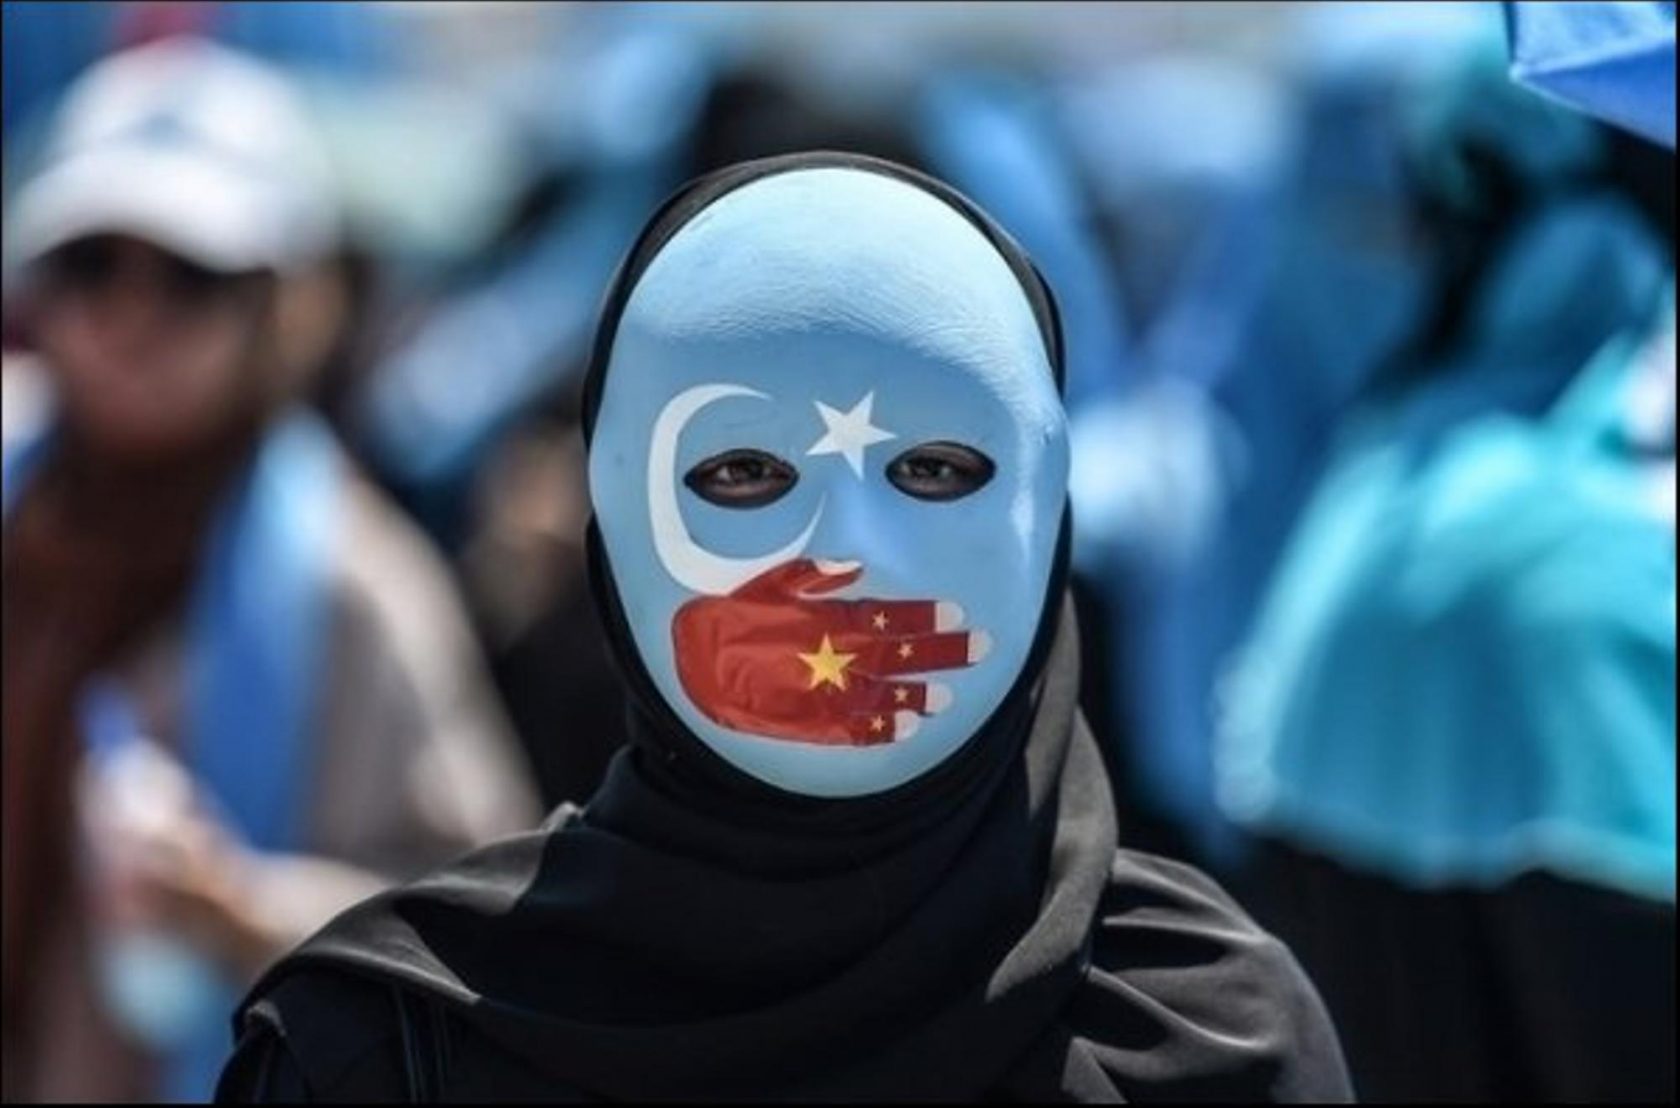 Domani – L’Europa riconoscerà il genocidio degli uiguri?